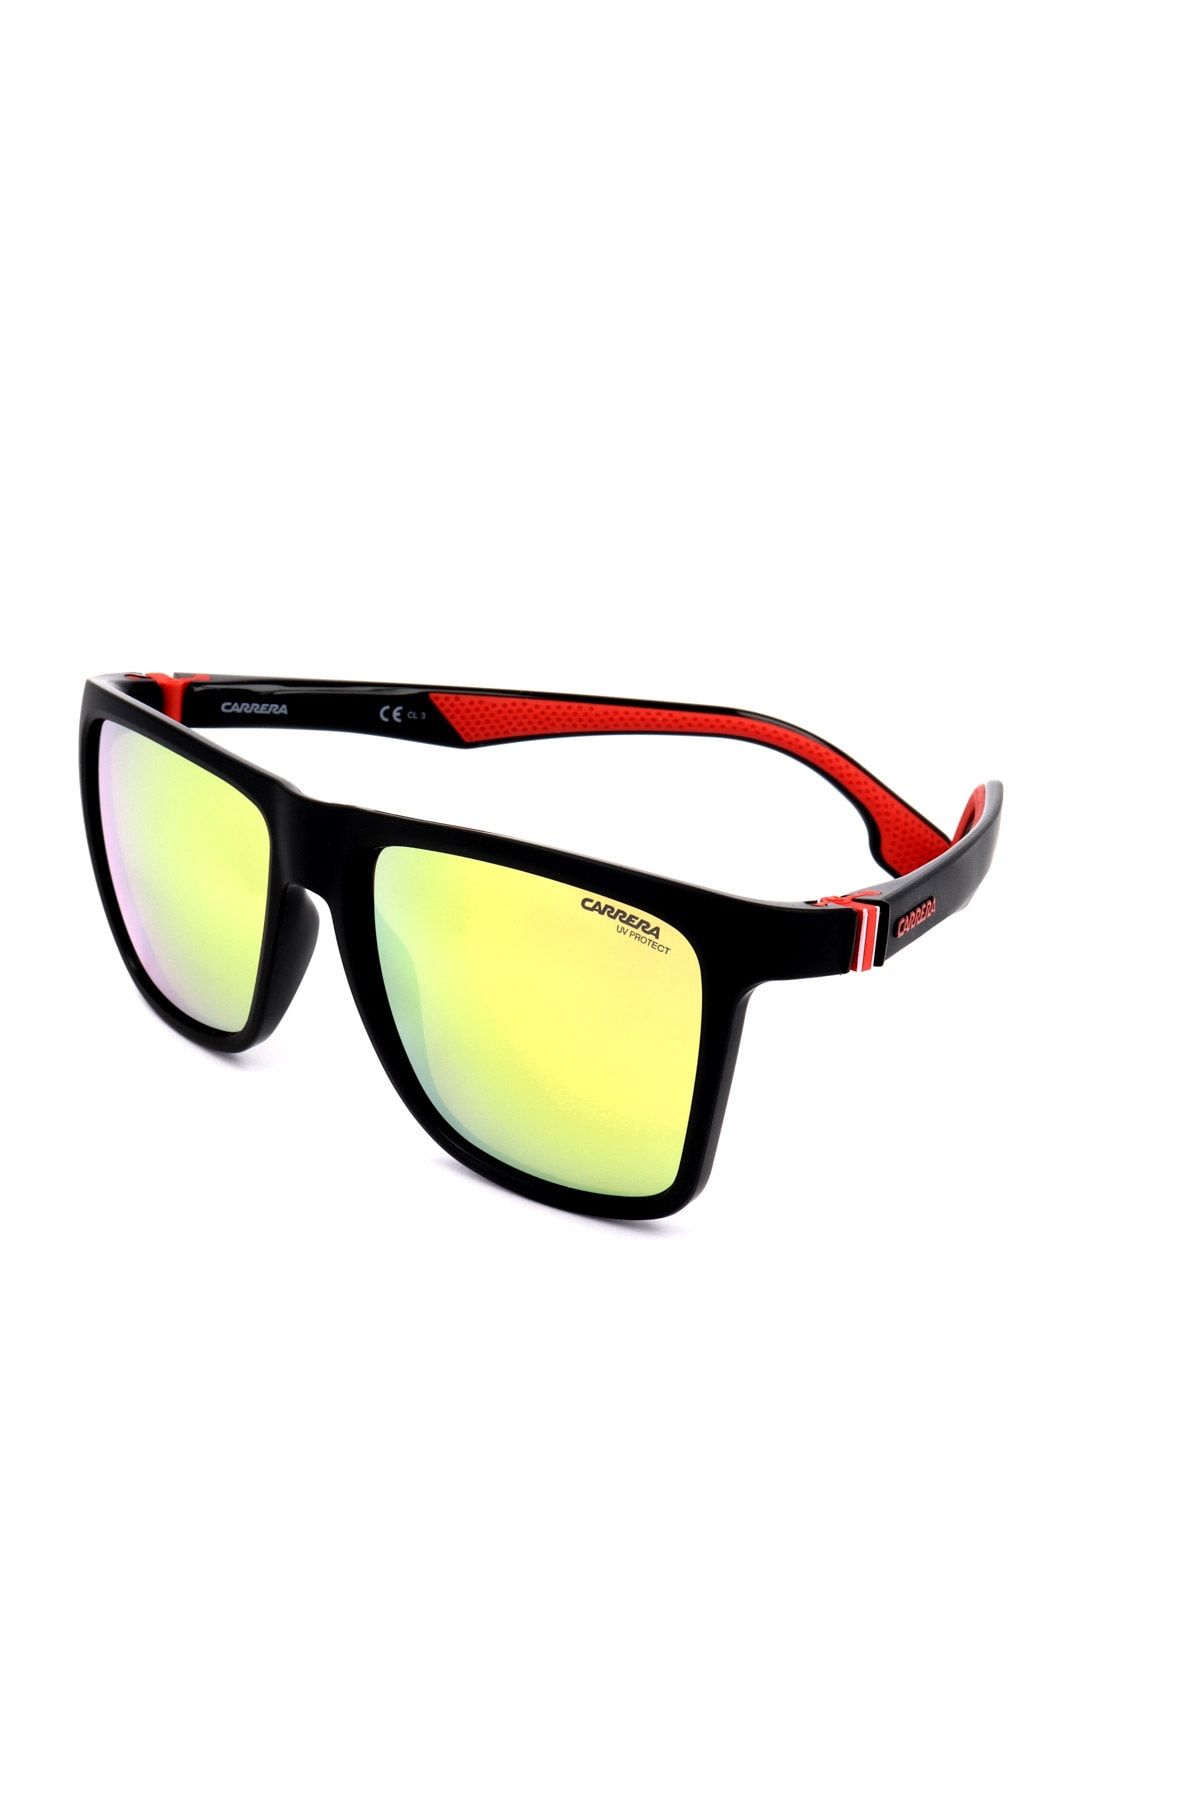 Carrera Sunglasses - Brown - Plain - Trendyol